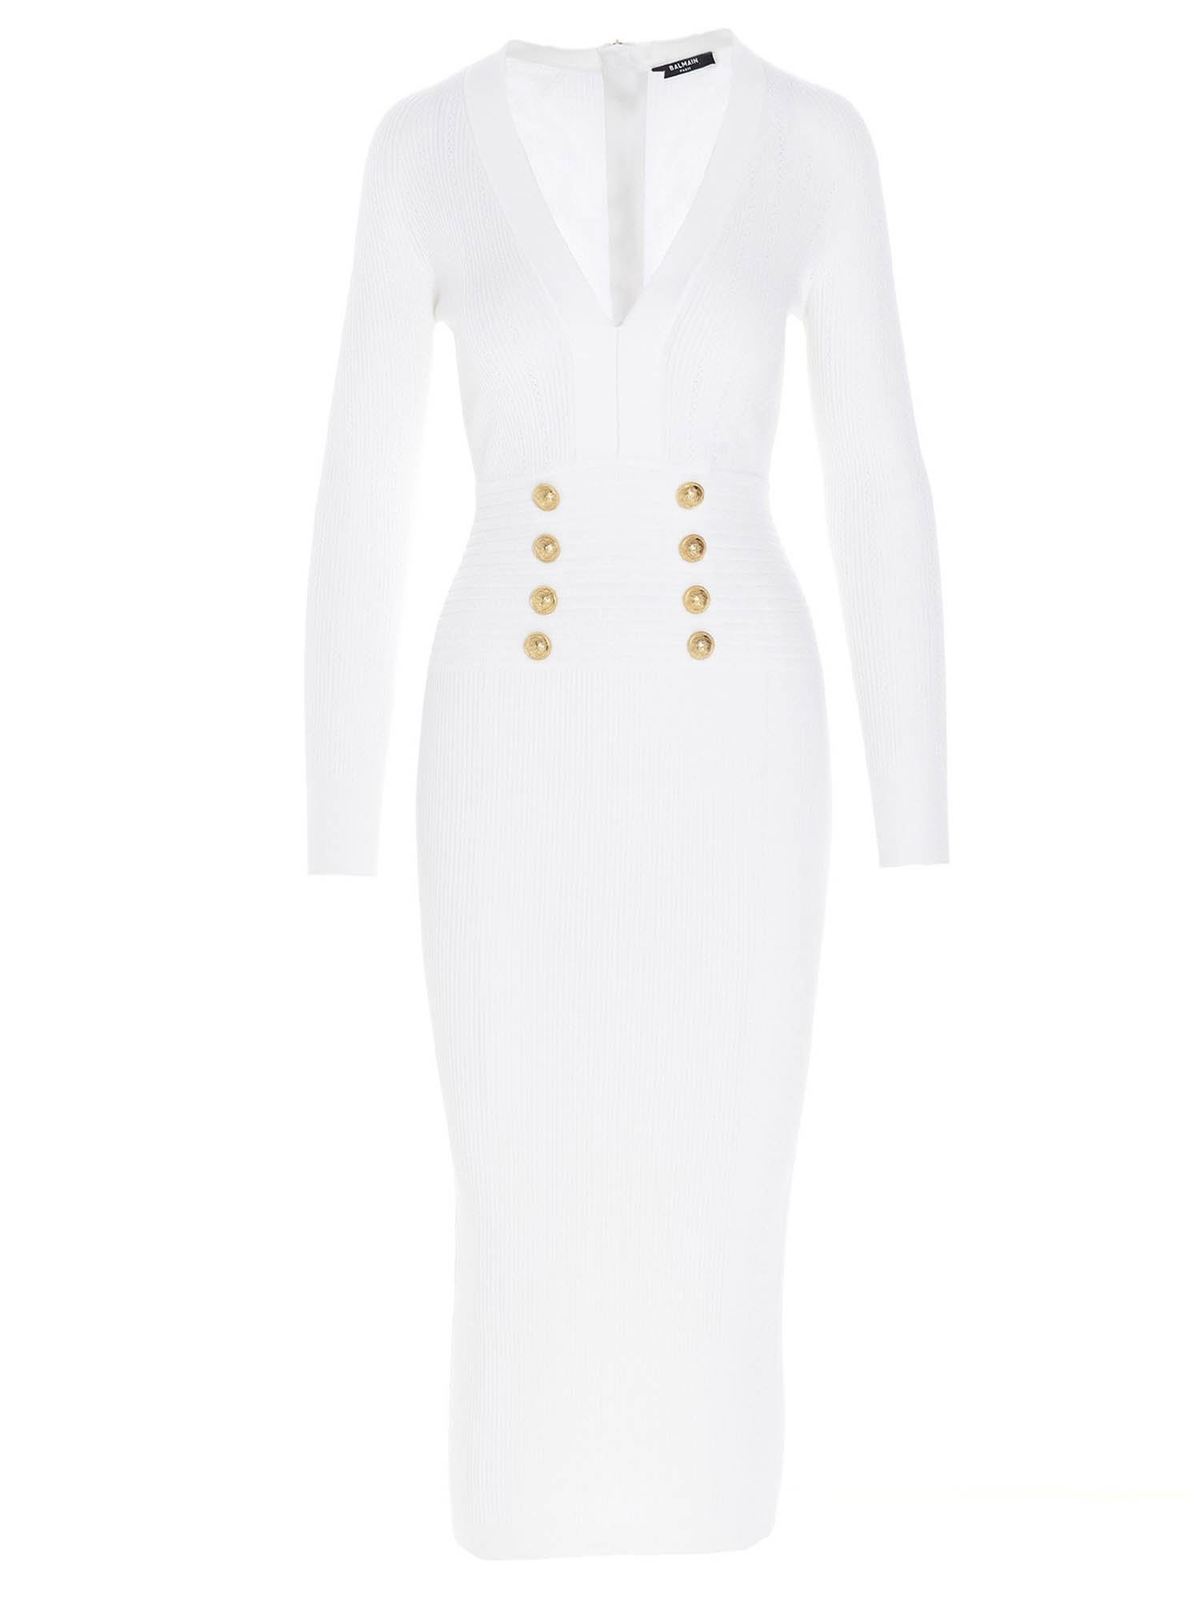 Tænke Oprør Bliver til Dresses Balmain - Gold buttoned midi dress in white - VF16644K2110FA